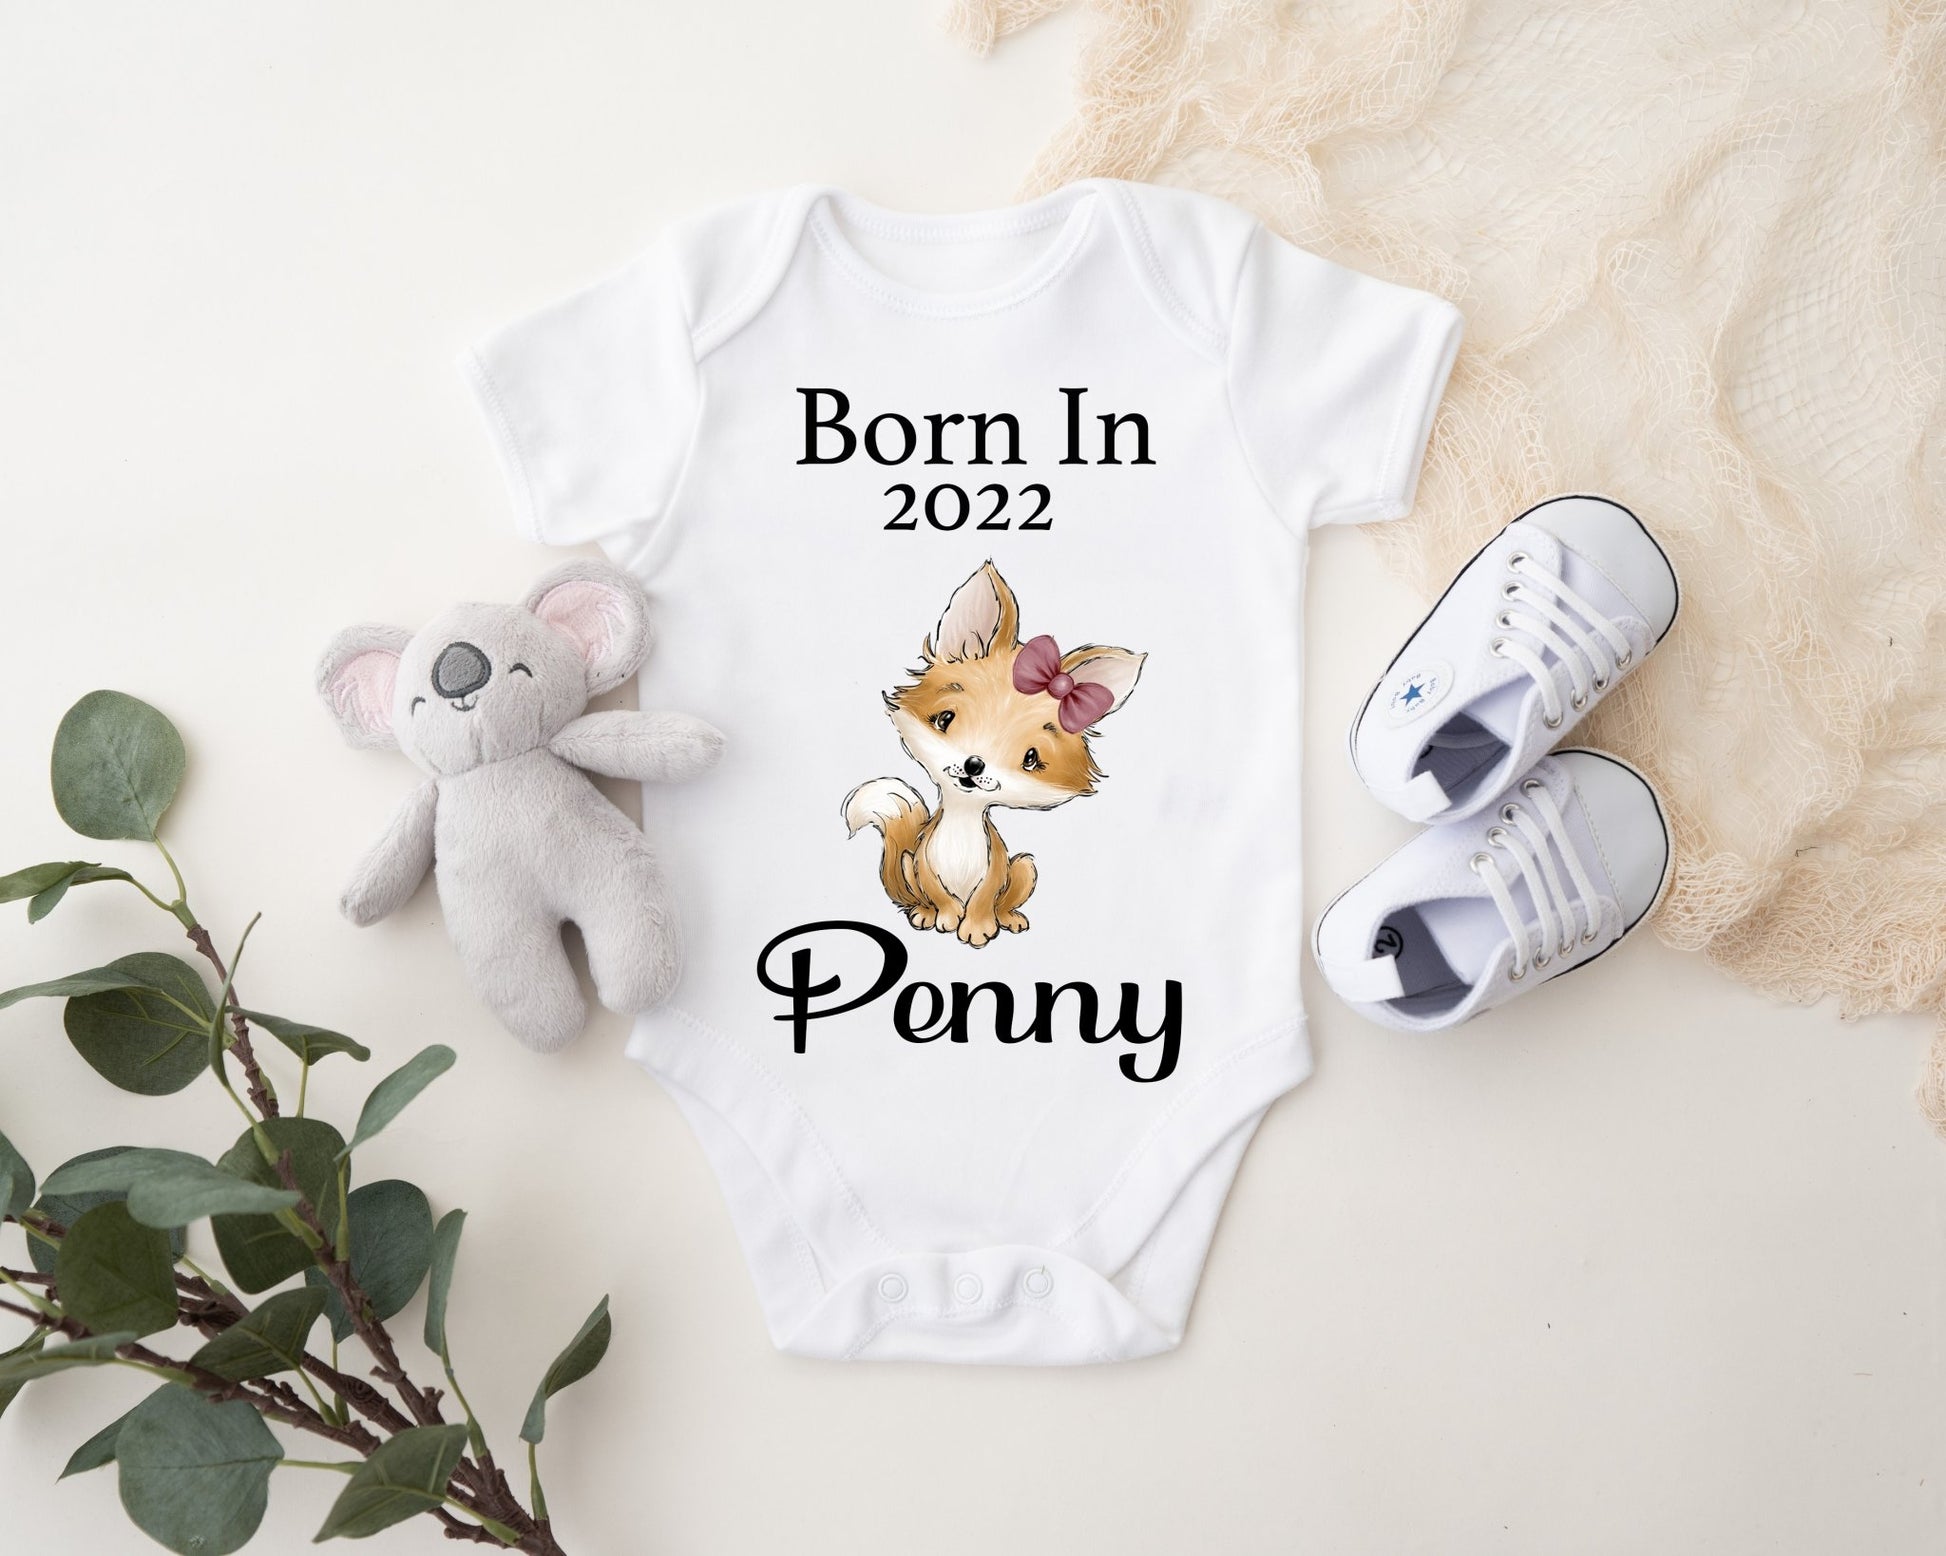 Born In 2022 Vest - Fox Girl Print